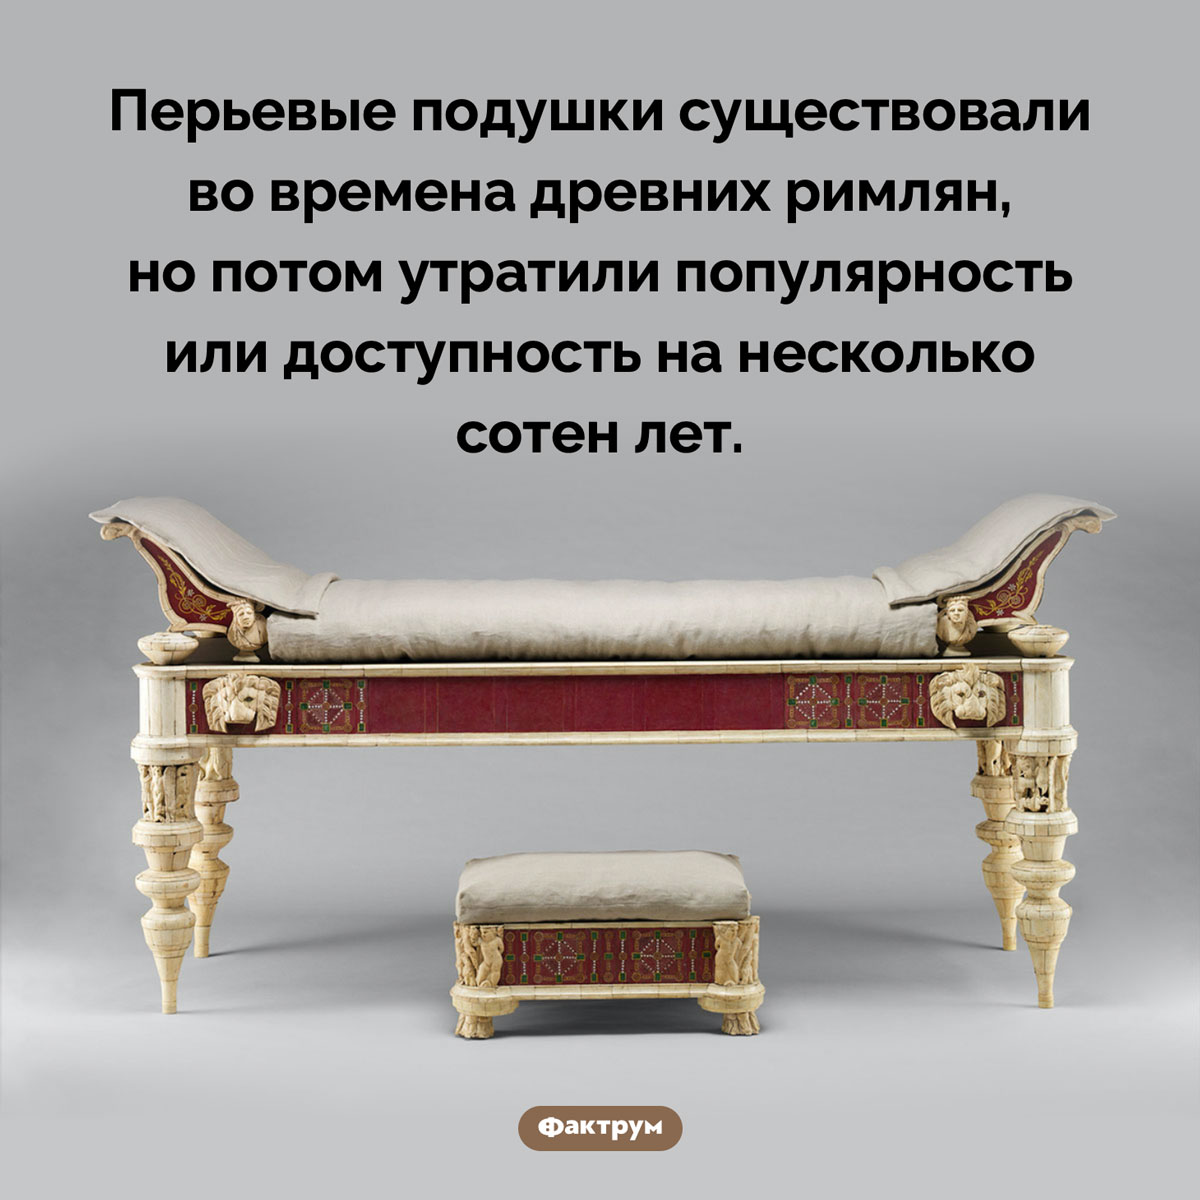 Древнеримские подушки. Перьевые подушки существовали во времена древних римлян, но потом утратили популярность или доступность на несколько сотен лет.